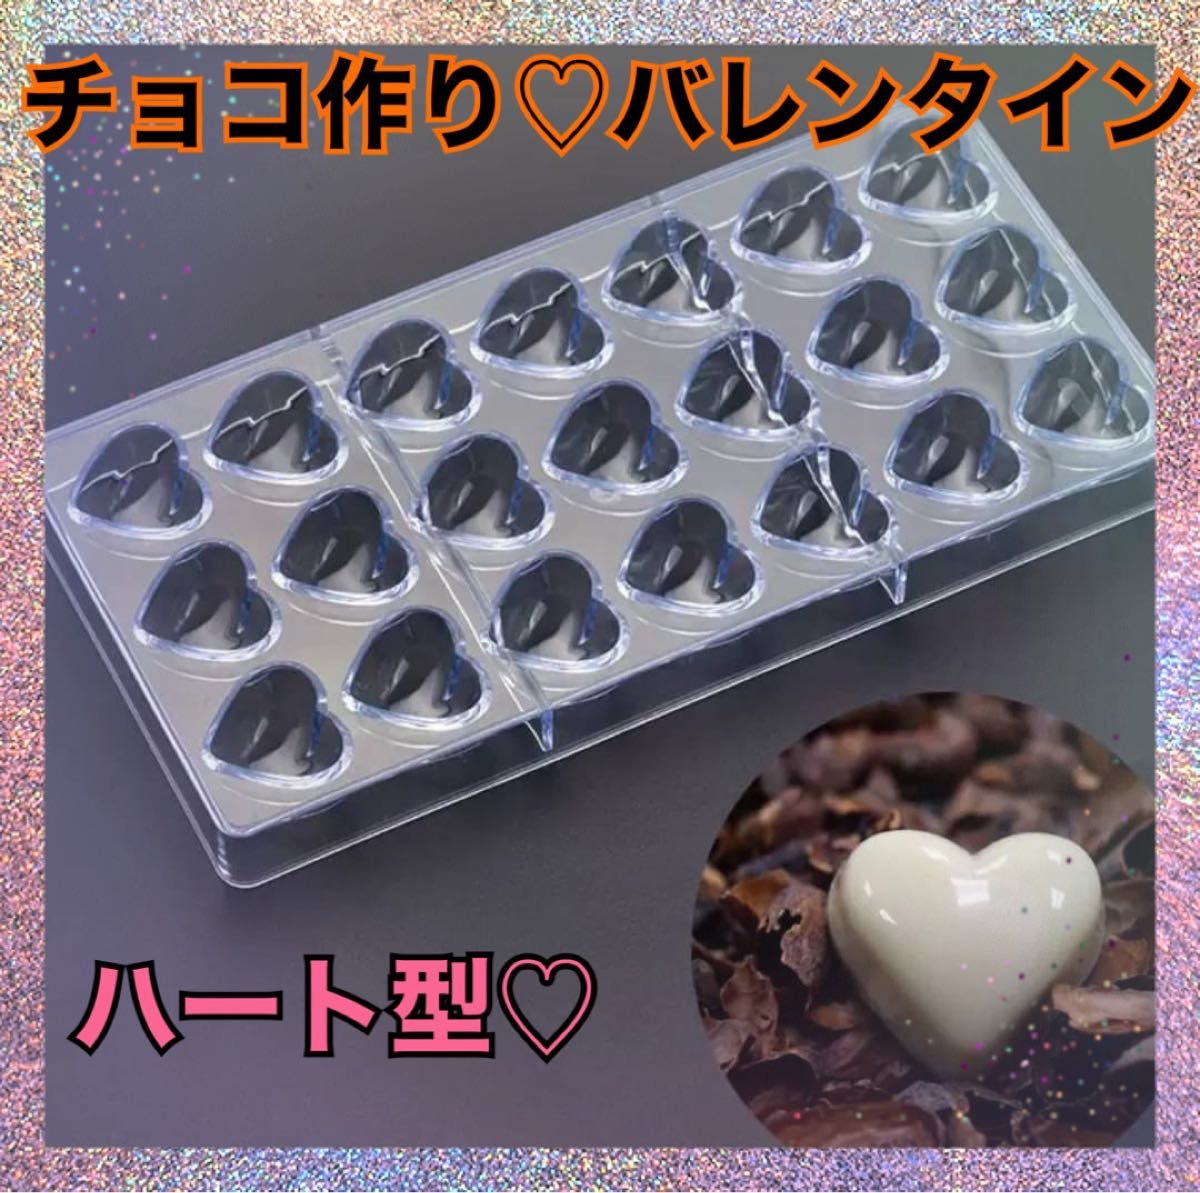 チョコ 型 プラスチック モールド ハート バレンタイン お菓子 手作り 大人気 値下げ